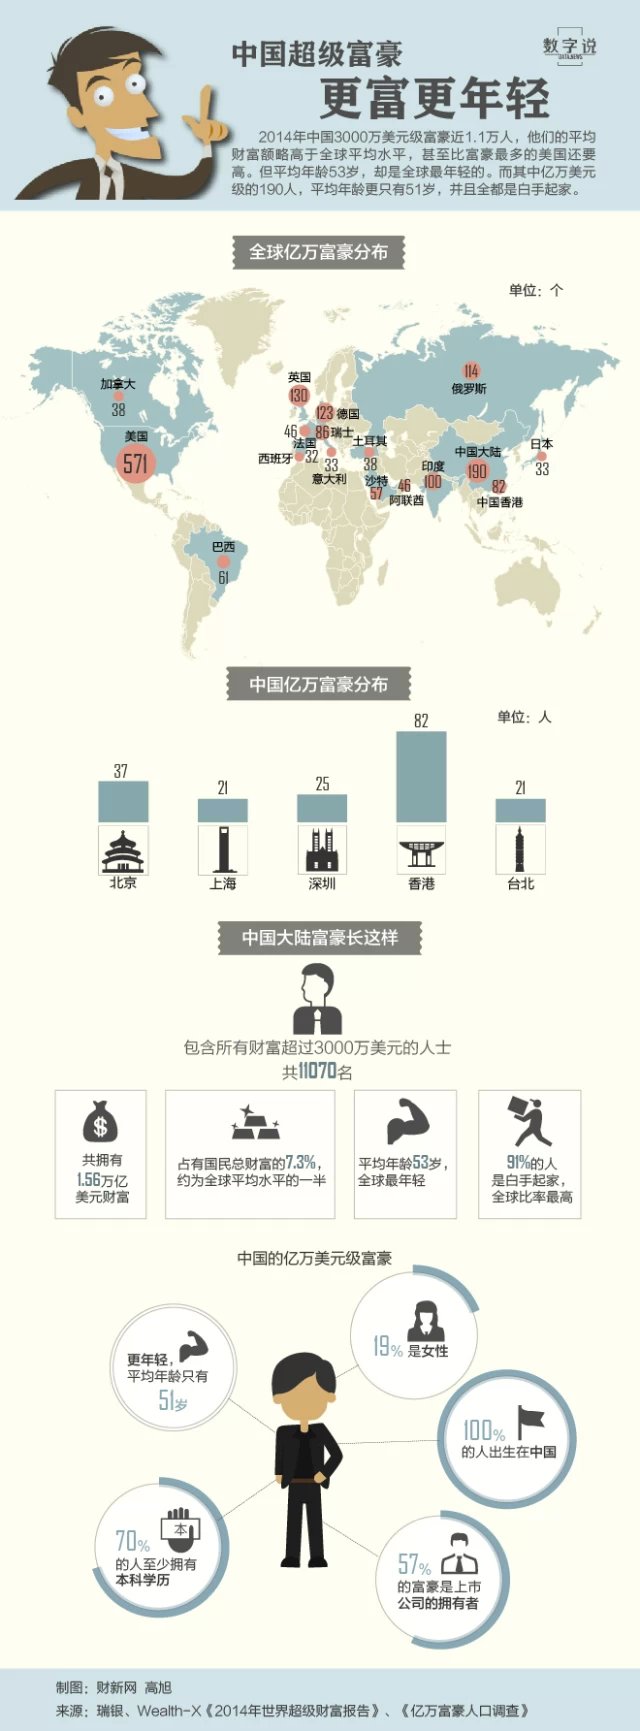 中国超级富豪 更富更年轻信息图